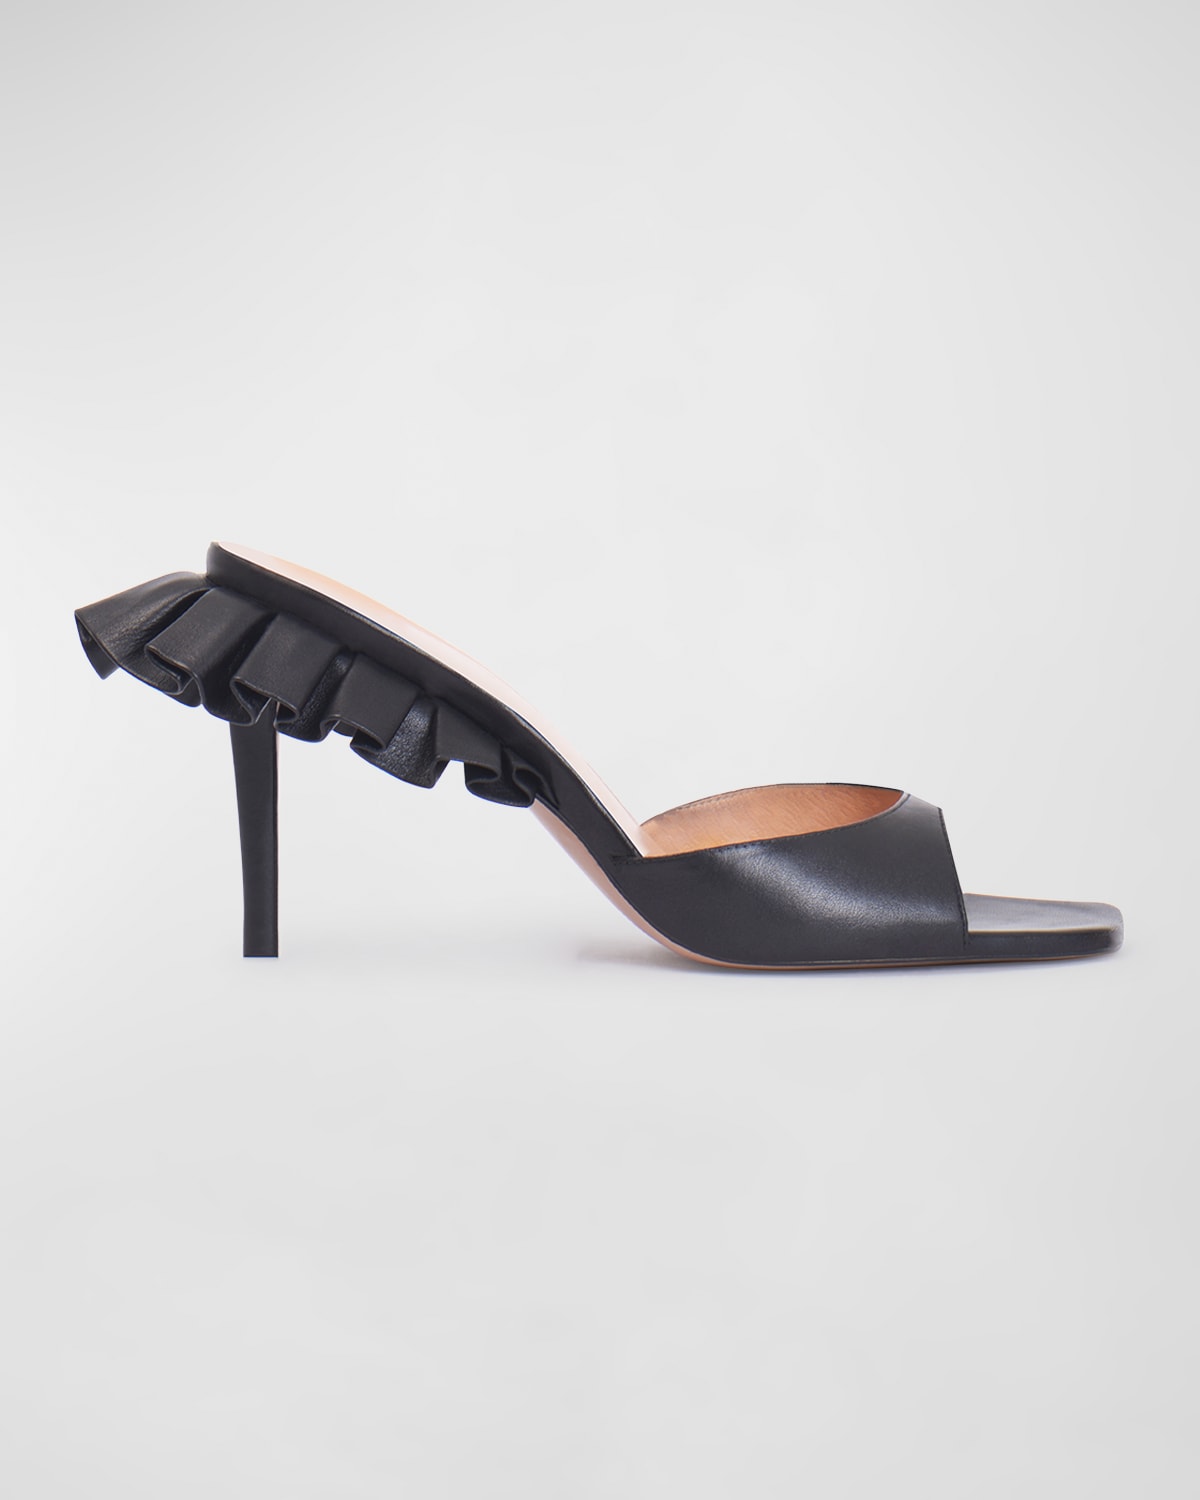 Andrea Wazen Rouches Napa Stiletto Mule Sandals In Black